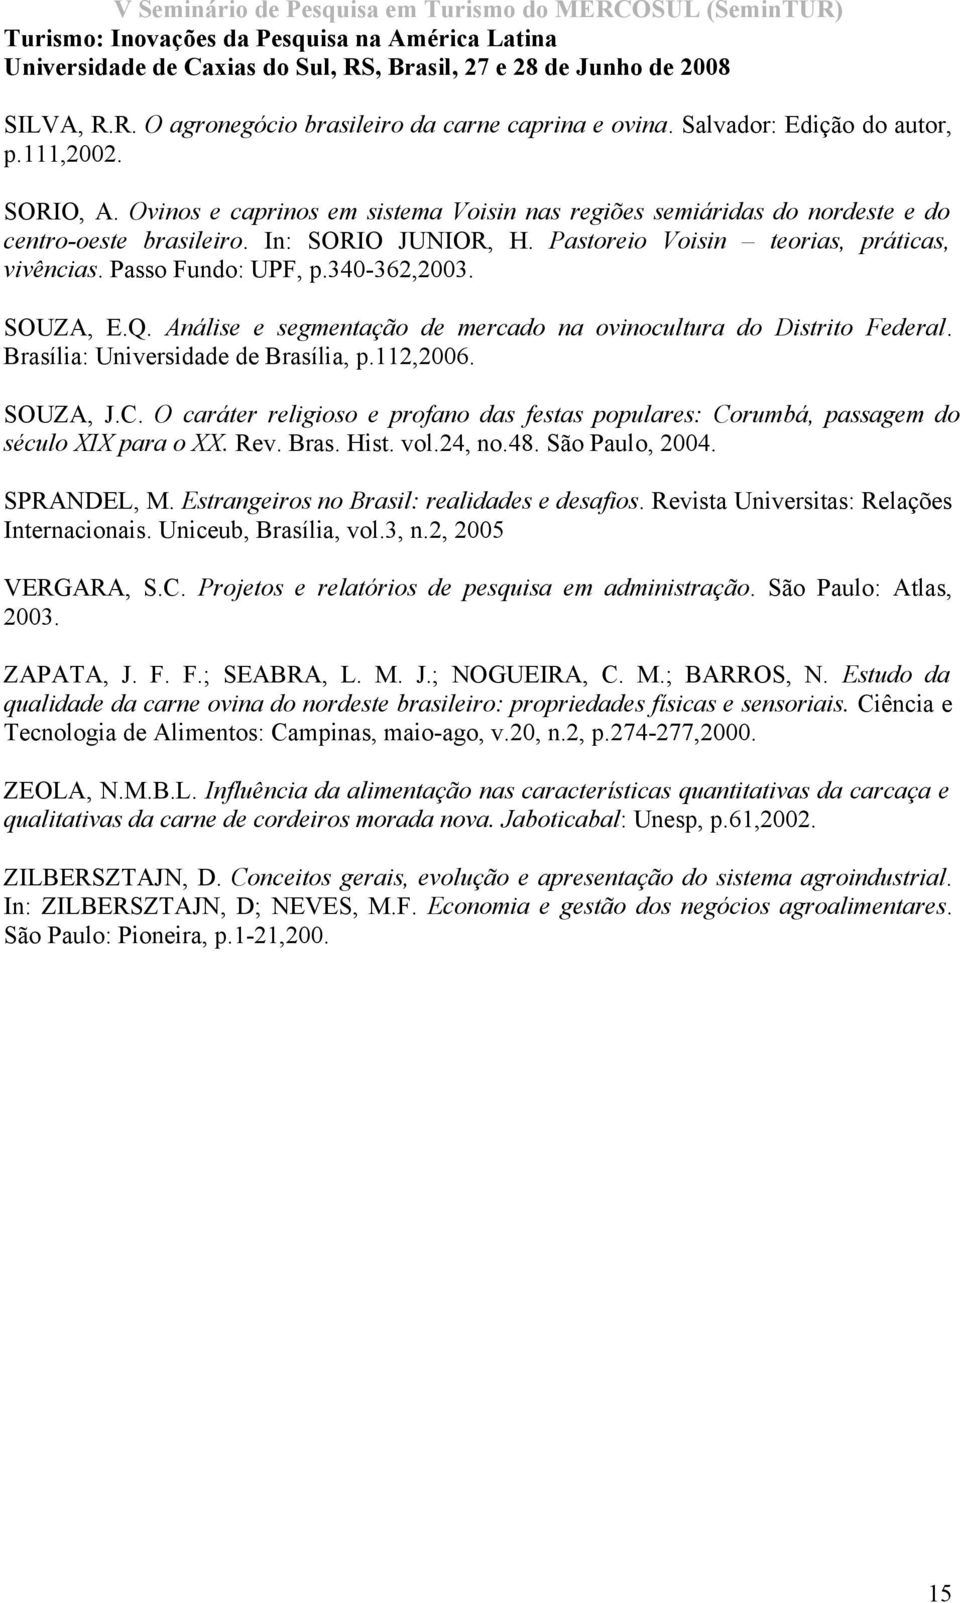 340-362,2003. SOUZA, E.Q. Análise e segmentação de mercado na ovinocultura do Distrito Federal. Brasília: Universidade de Brasília, p.112,2006. SOUZA, J.C.